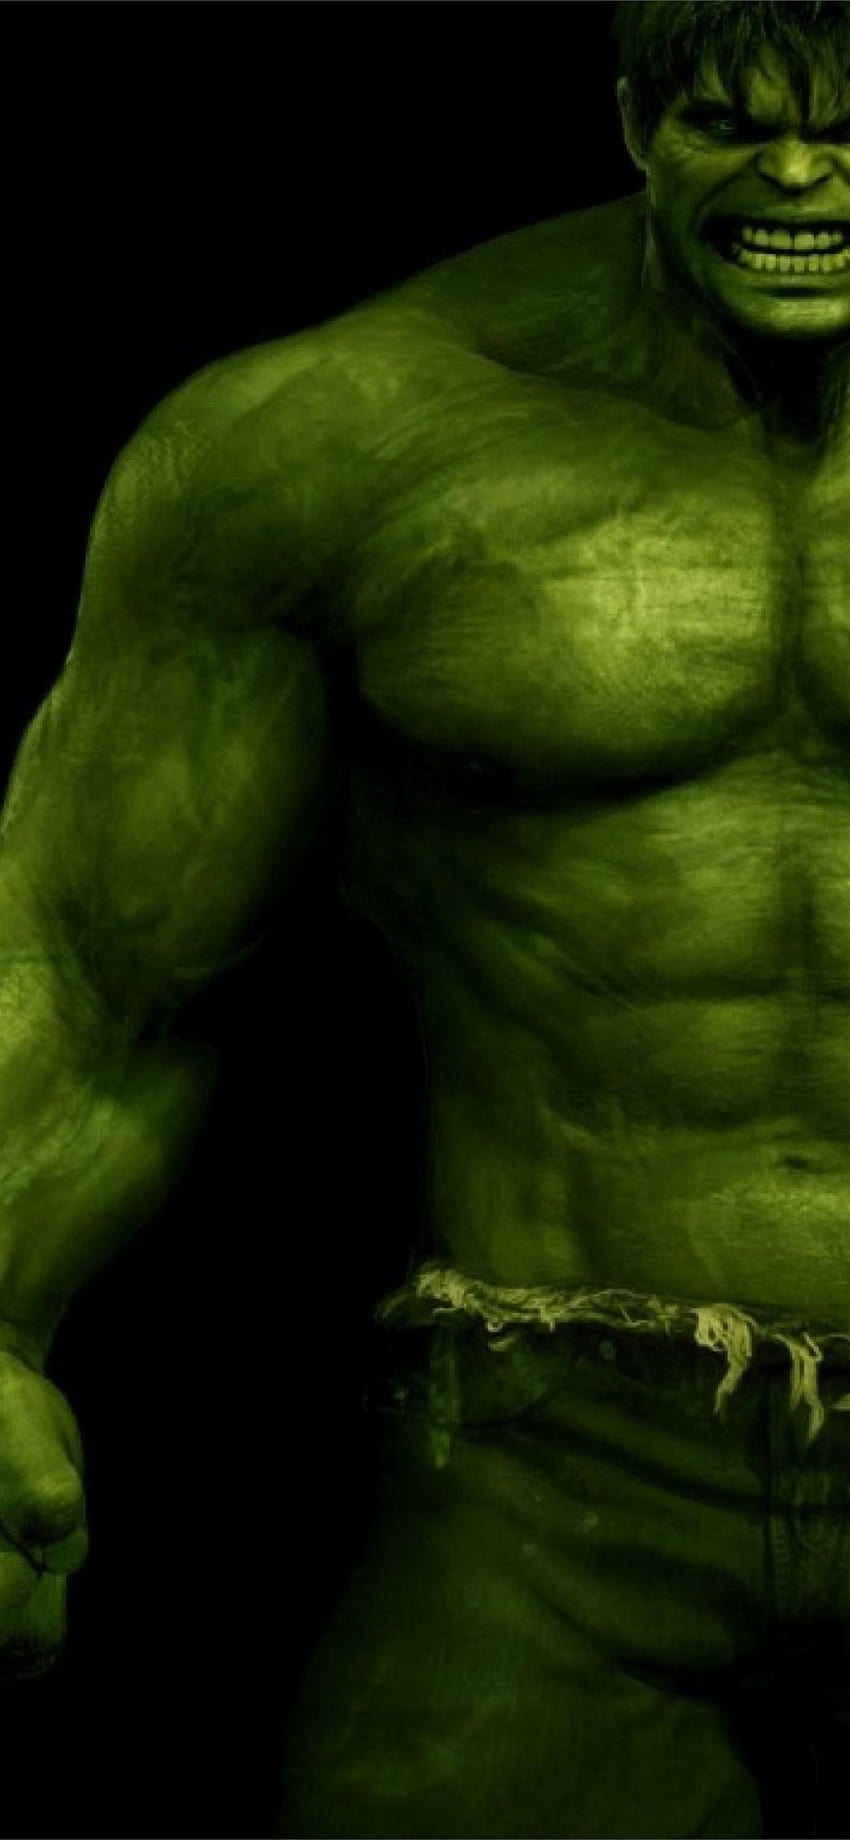 Incredible hulk iPhone, hulk poster HD phone wallpaper | Pxfuel